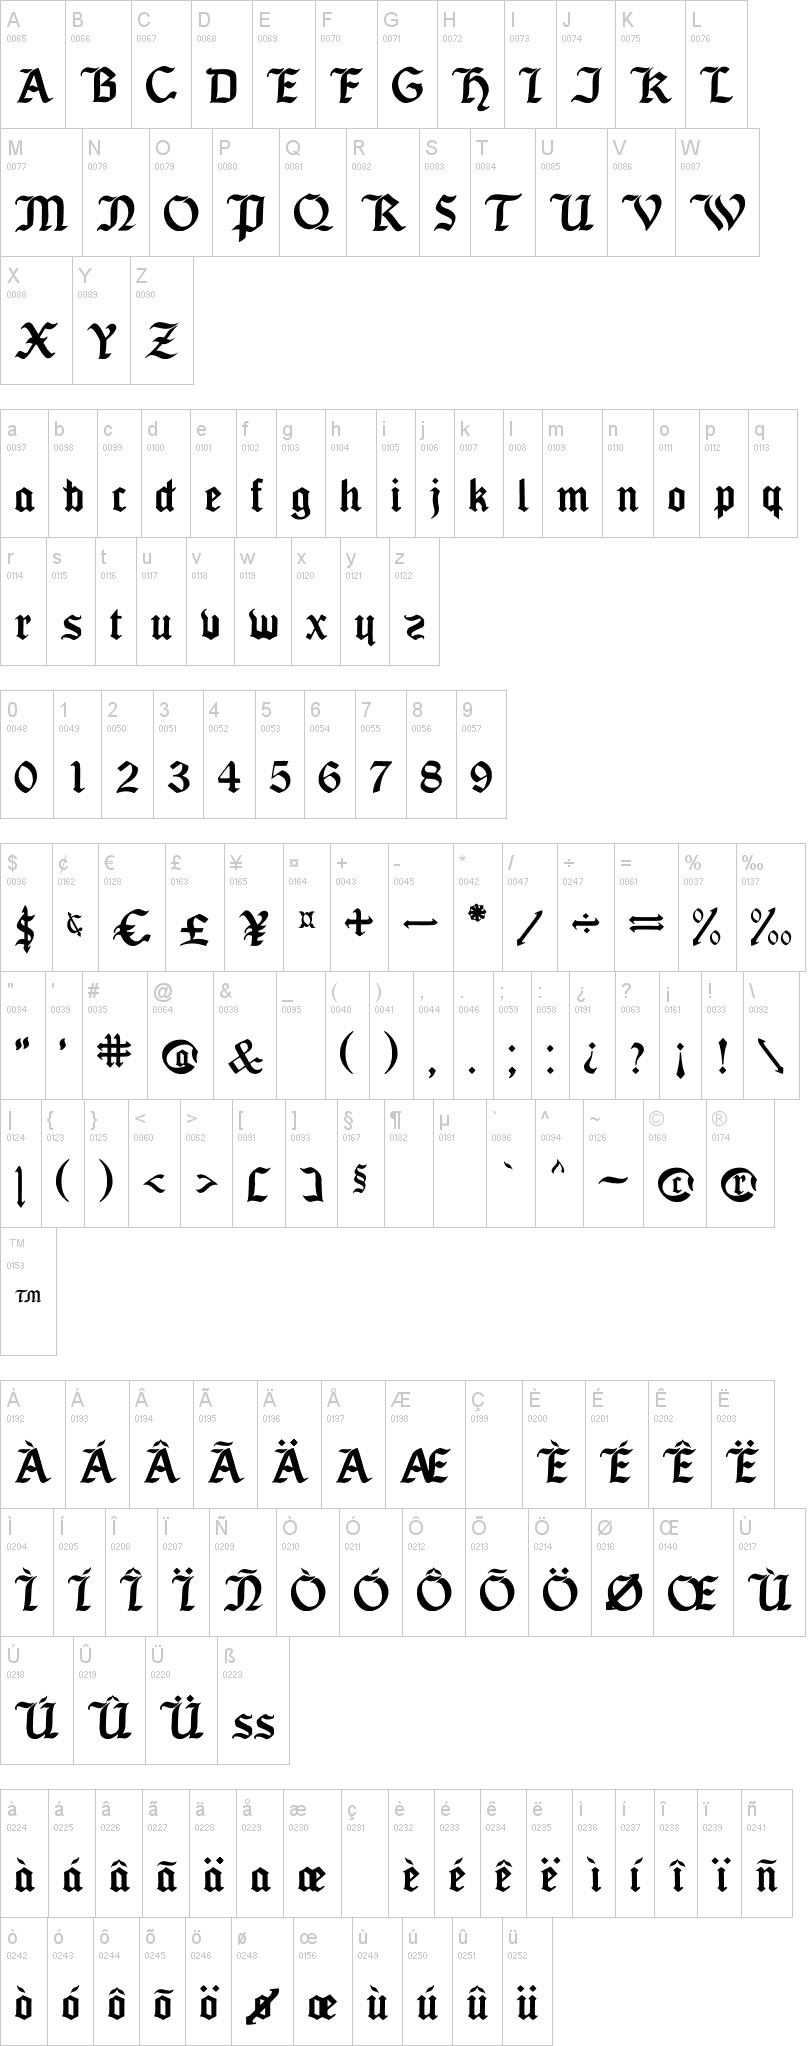 Estrella Galicia tipografia abecedario